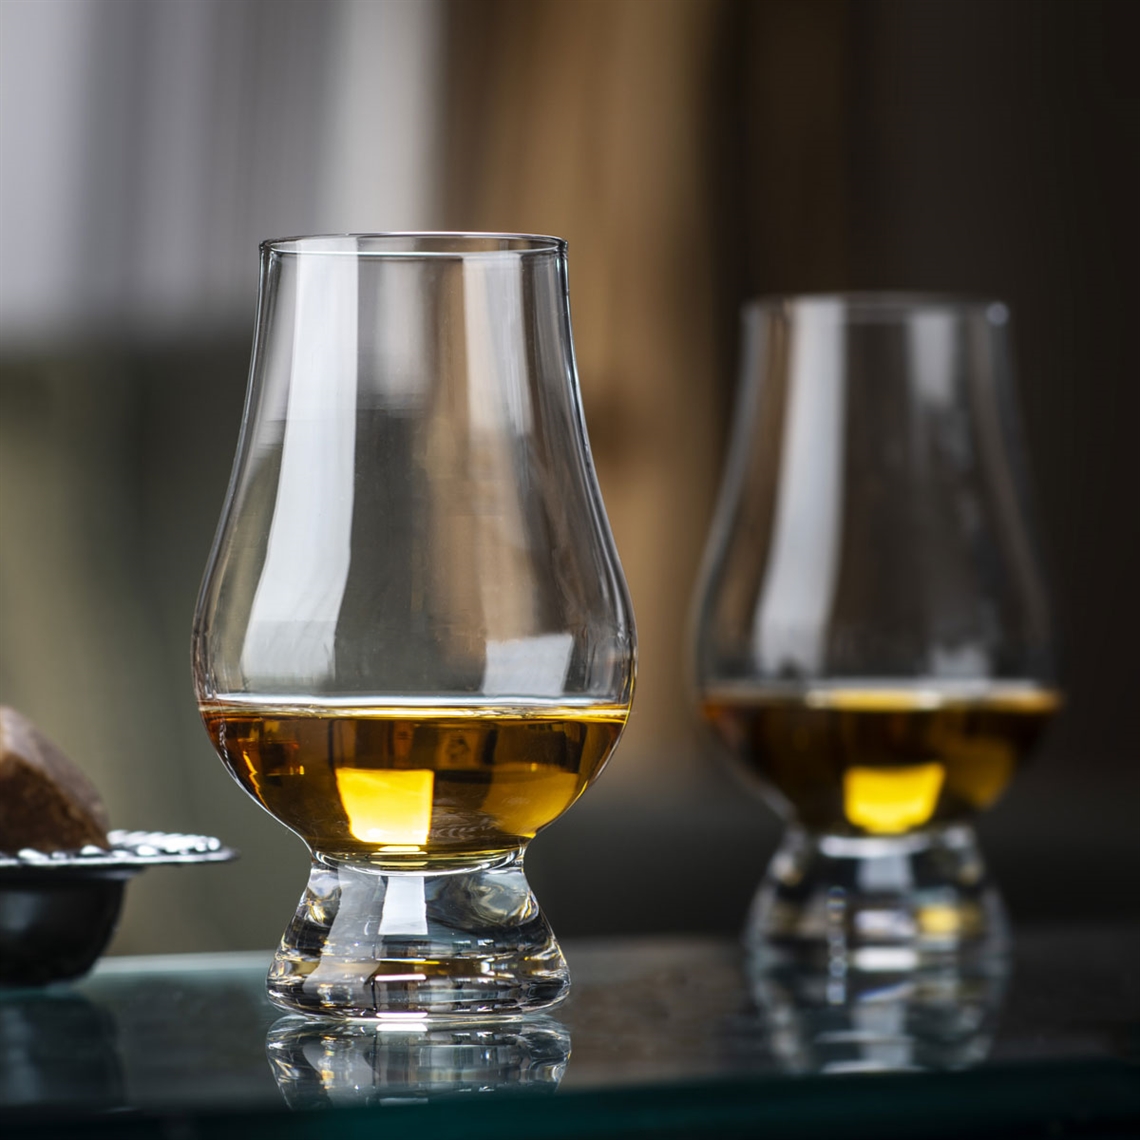 The Glencairn Official Whisky Glass Tasting Set - 6 Glasses, 1 Jug, 6 Caps, 1 Pipette